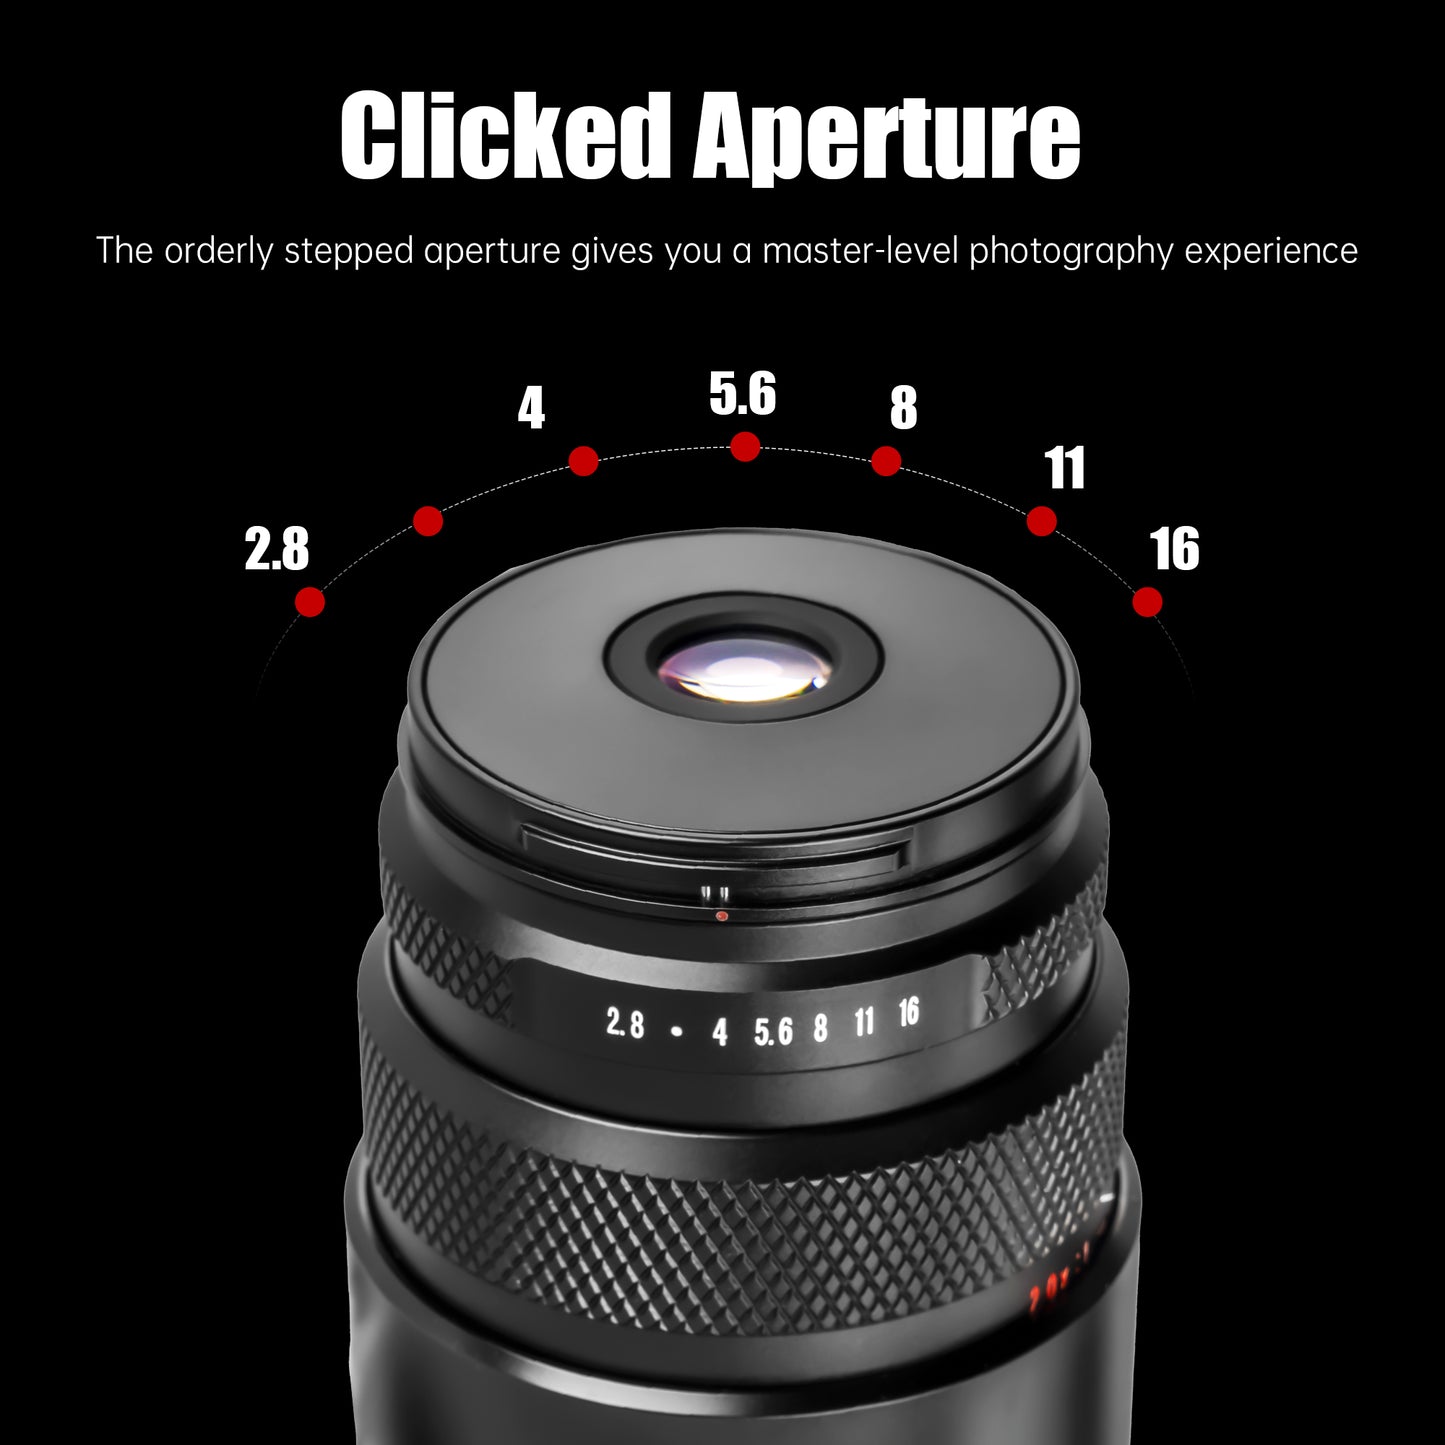 25mm F2.8 Full-frame Ultra Macro Lens for E/L/RF/Z/FX